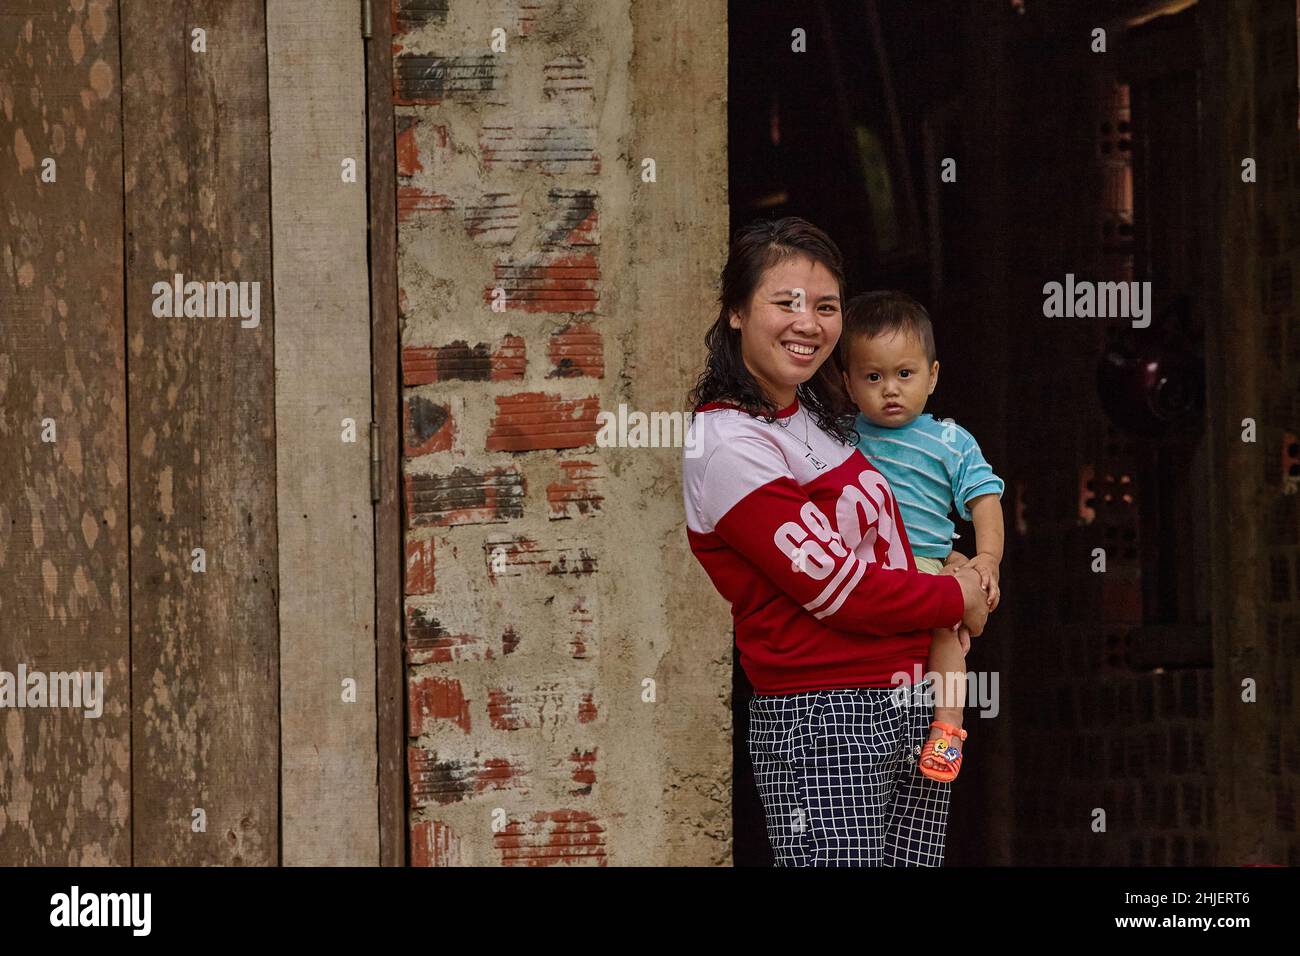 Eine junge, lächelnde vietnamesische Frau hält ihr Kind an den Händen vor einem dunklen Hauseingang. Stockfoto